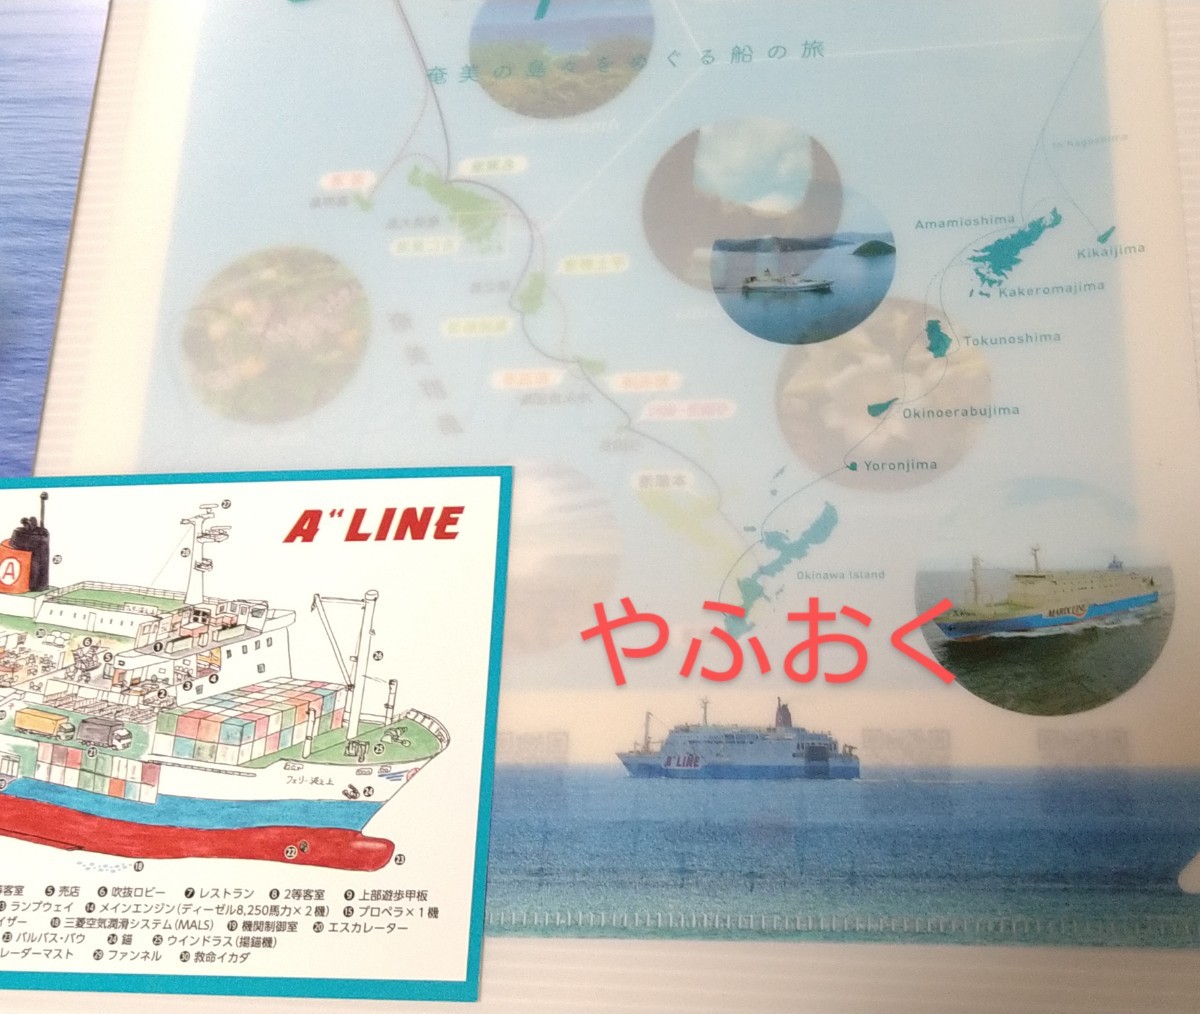  maru e- Ferrie 3 пункт * прозрачный файл, проспект, Ferrie волна . сверху Amami .. map карта akebono судно Amami судно . Maricc s линия судно 